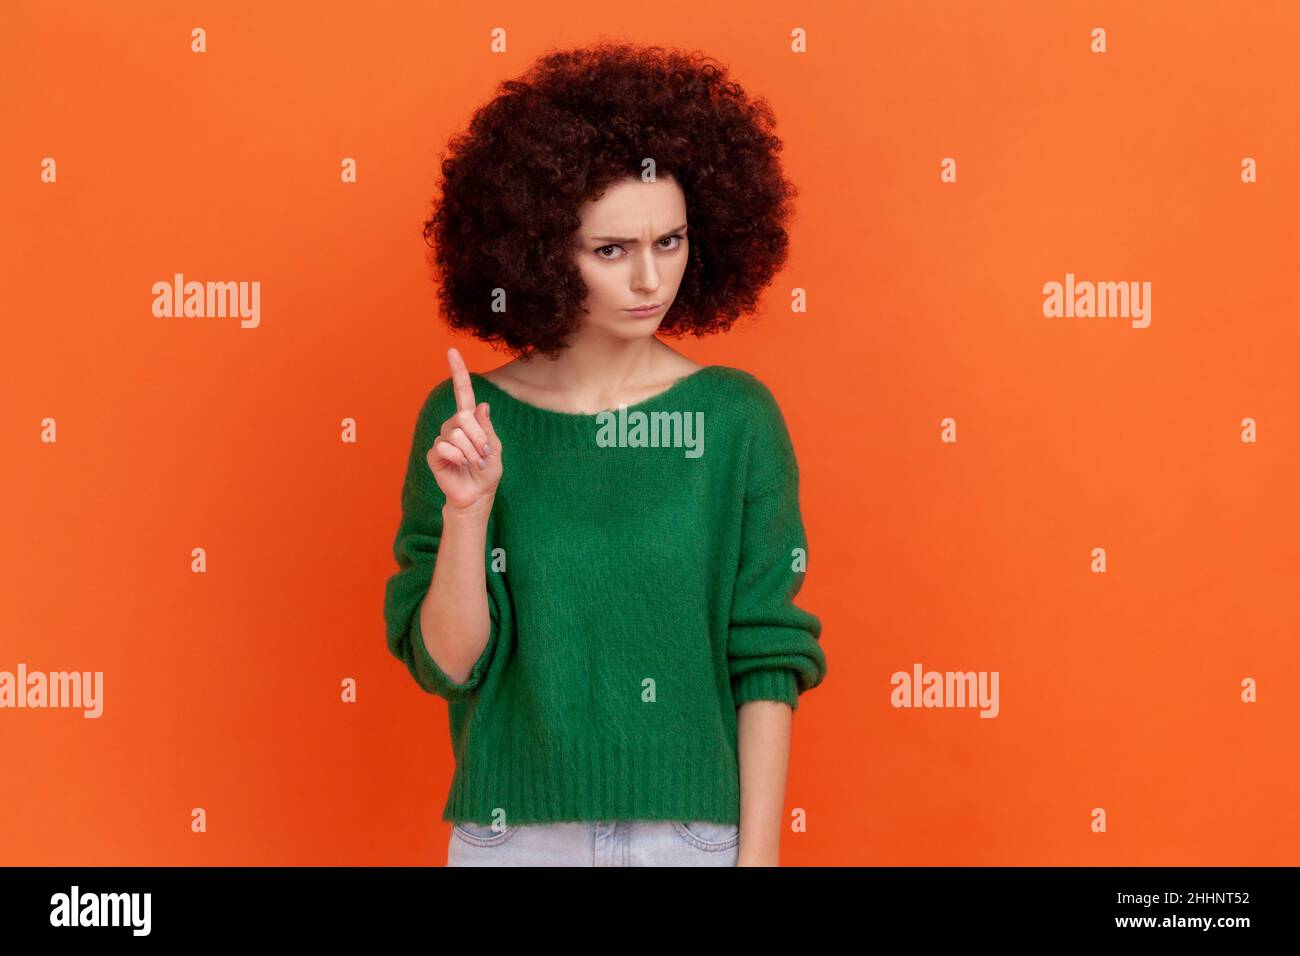 Portrait d'une femme sérieuse avec une coiffure afro portant un chandail vert de style décontracté regardant l'appareil photo, montrant un signe d'avertissement attention.Studio d'intérieur isolé sur fond orange. Banque D'Images